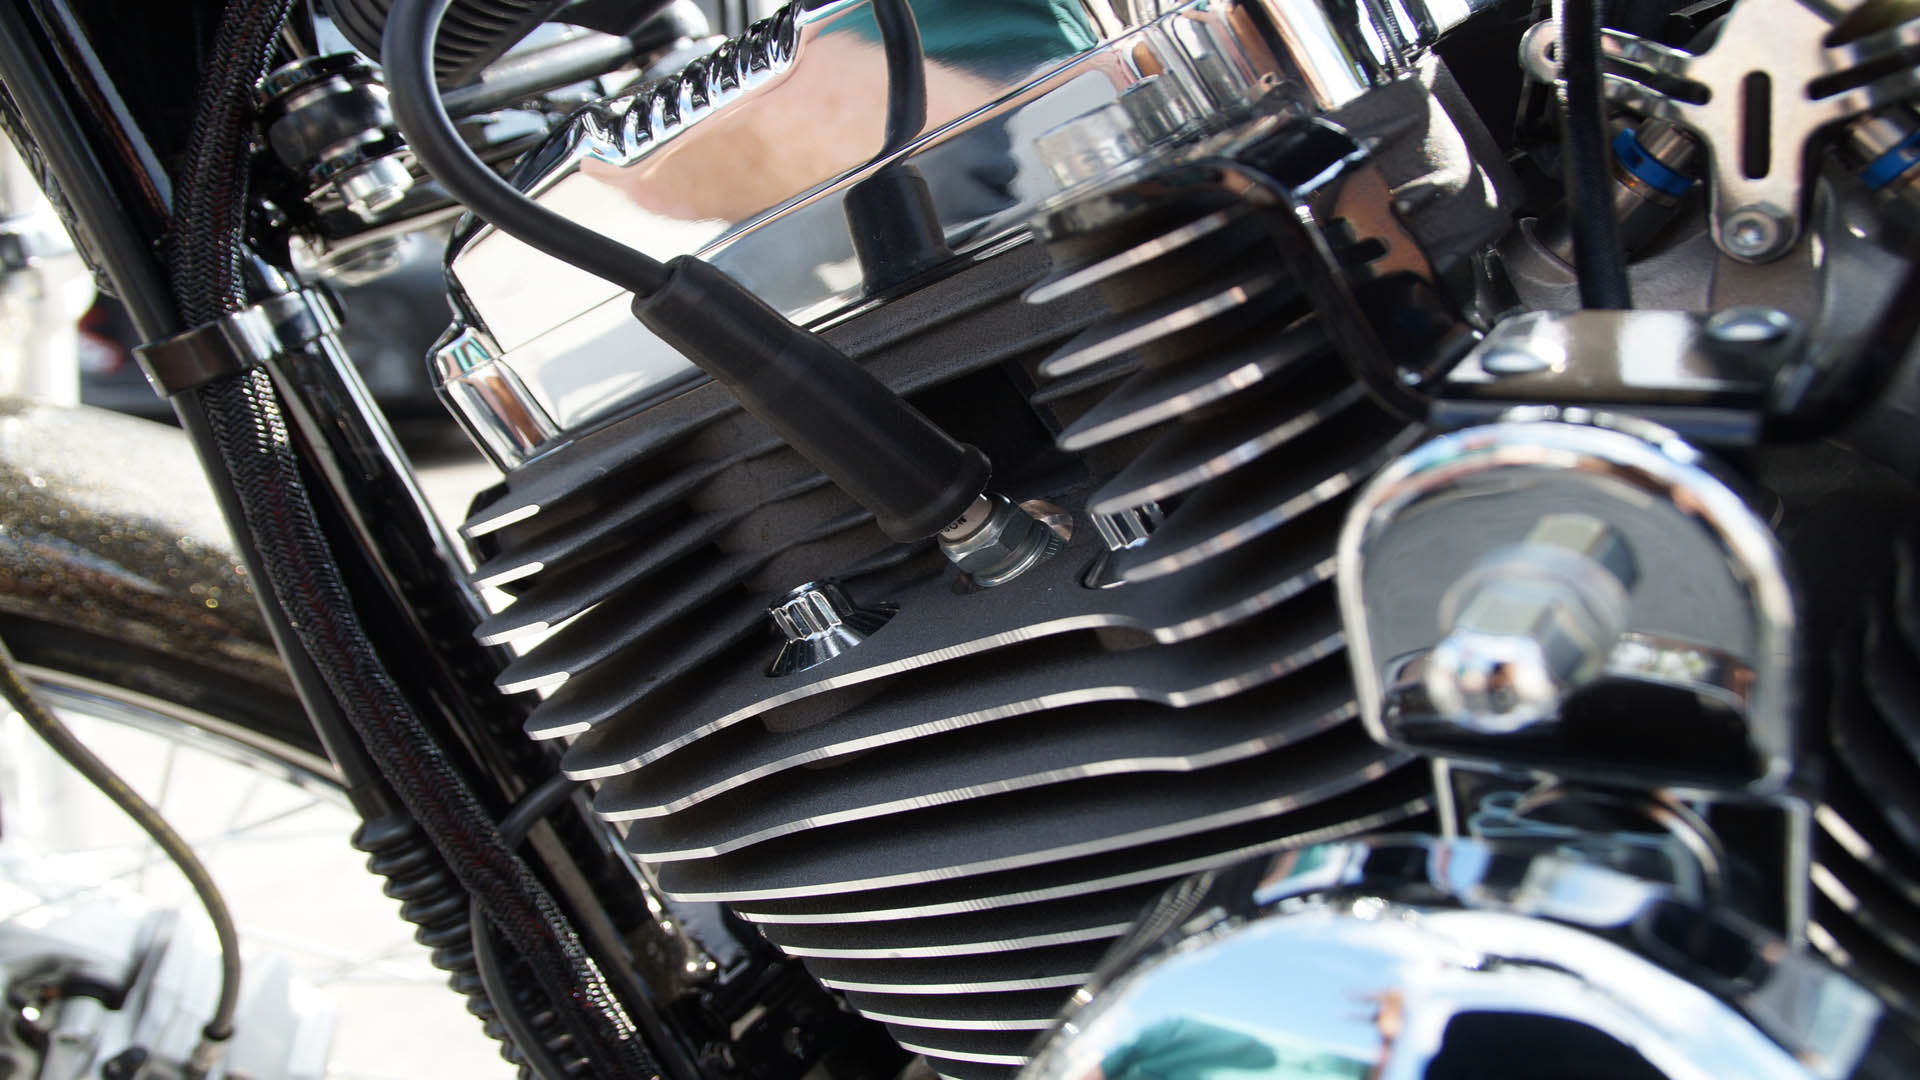 Msd Ignition For Harley Davidson